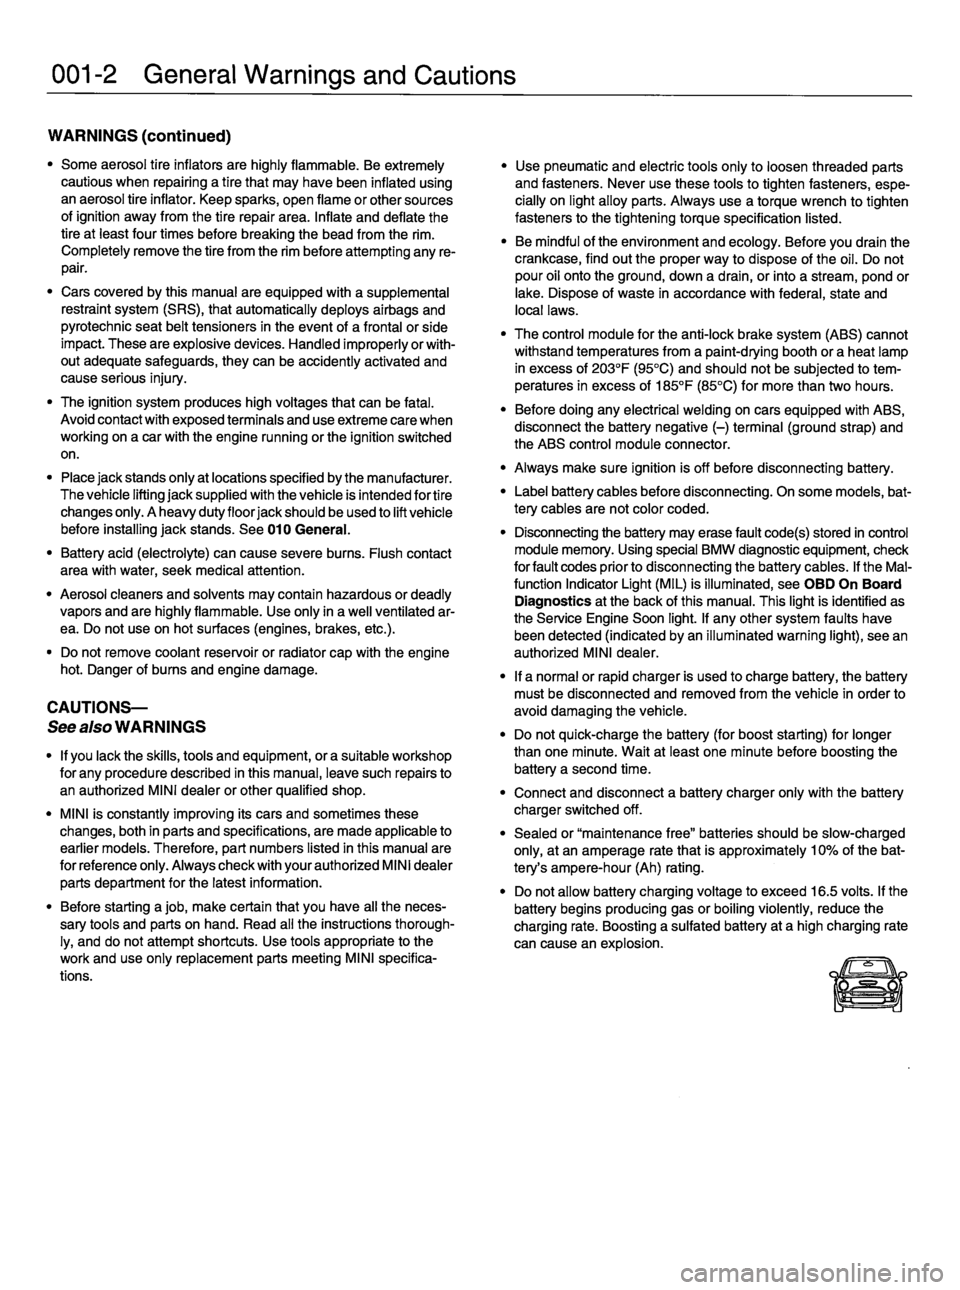 MINI COOPER 2002  Service Repair Manual 